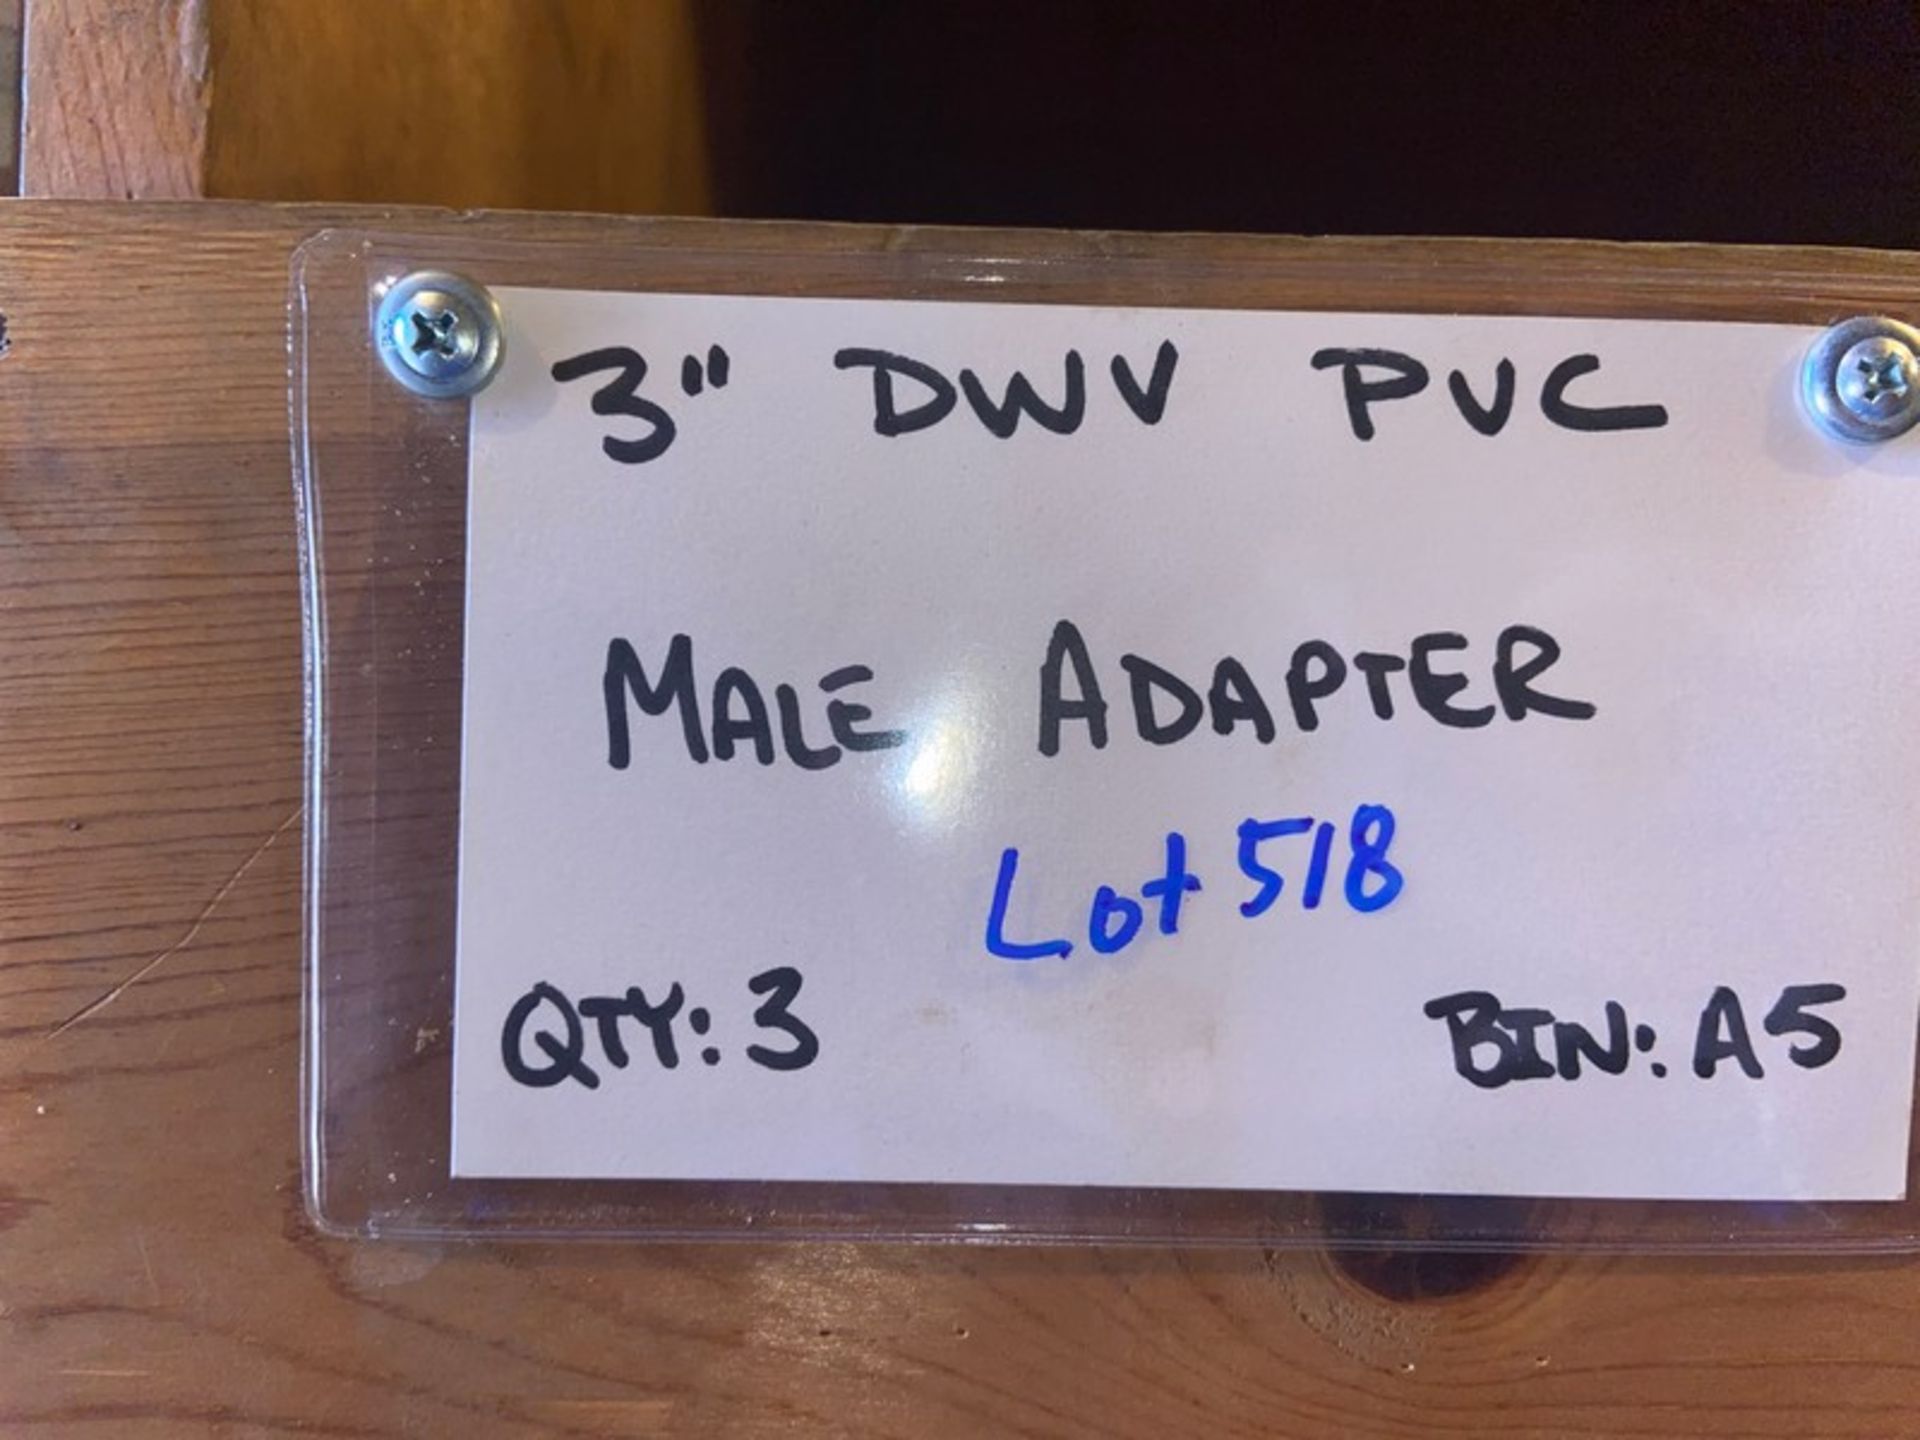 (3) 3” DWV PVC MALE ADAPTER (Bin: A5), Includes (7) 3” DWV PVC Female Adapter (STREET) (Bin:A5), - Image 11 of 11